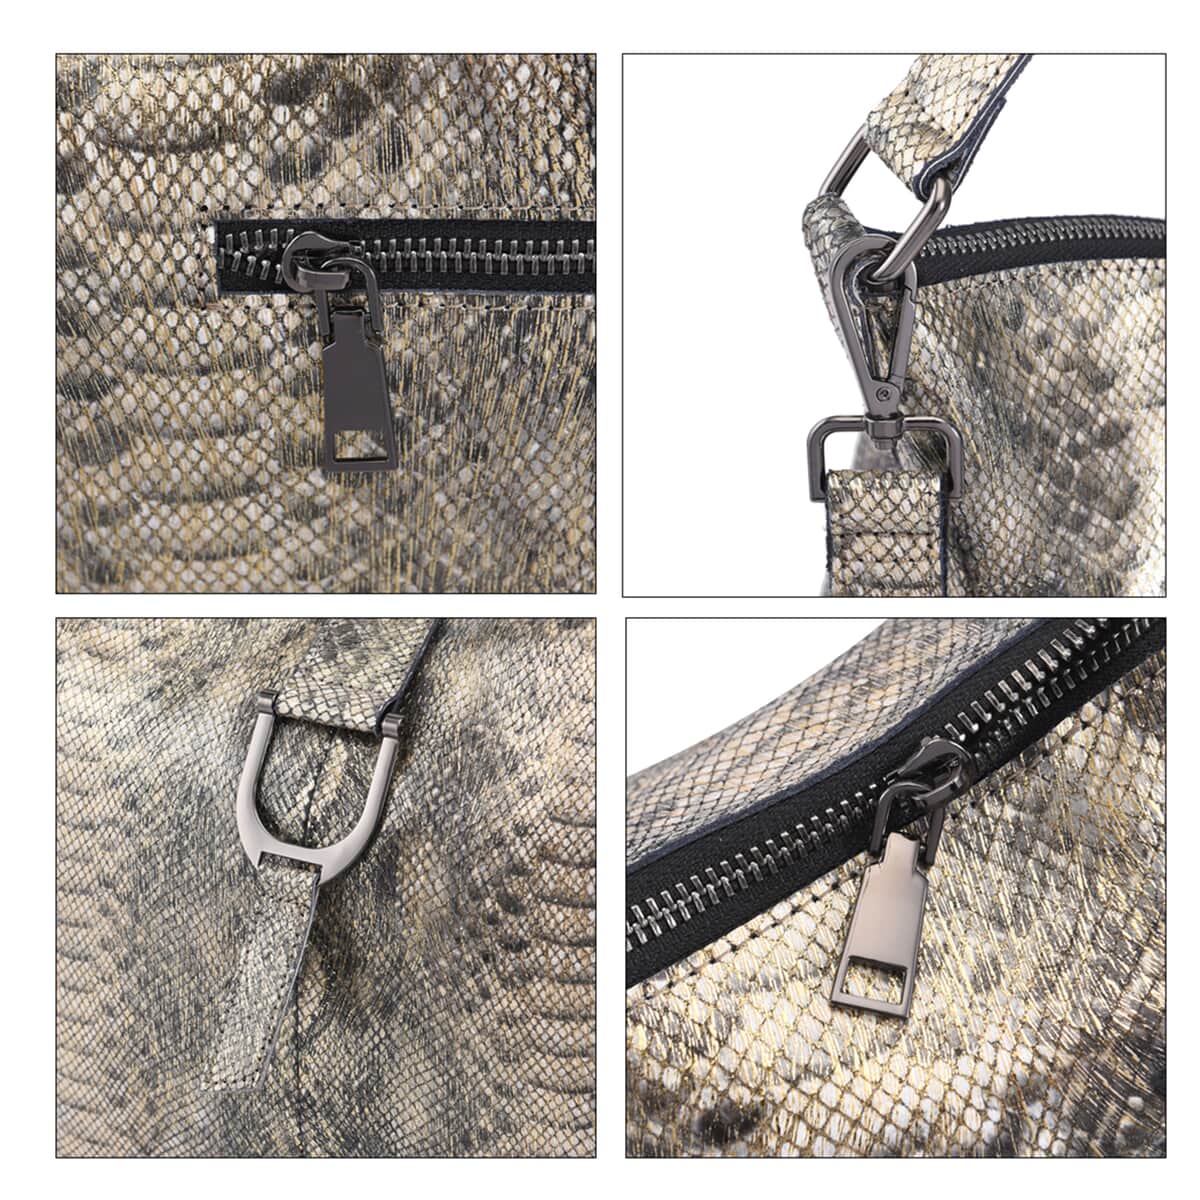 Gold and Black Snake Print Genuine Leather Hobo Bag with Detachable Shoulder Strap image number 4